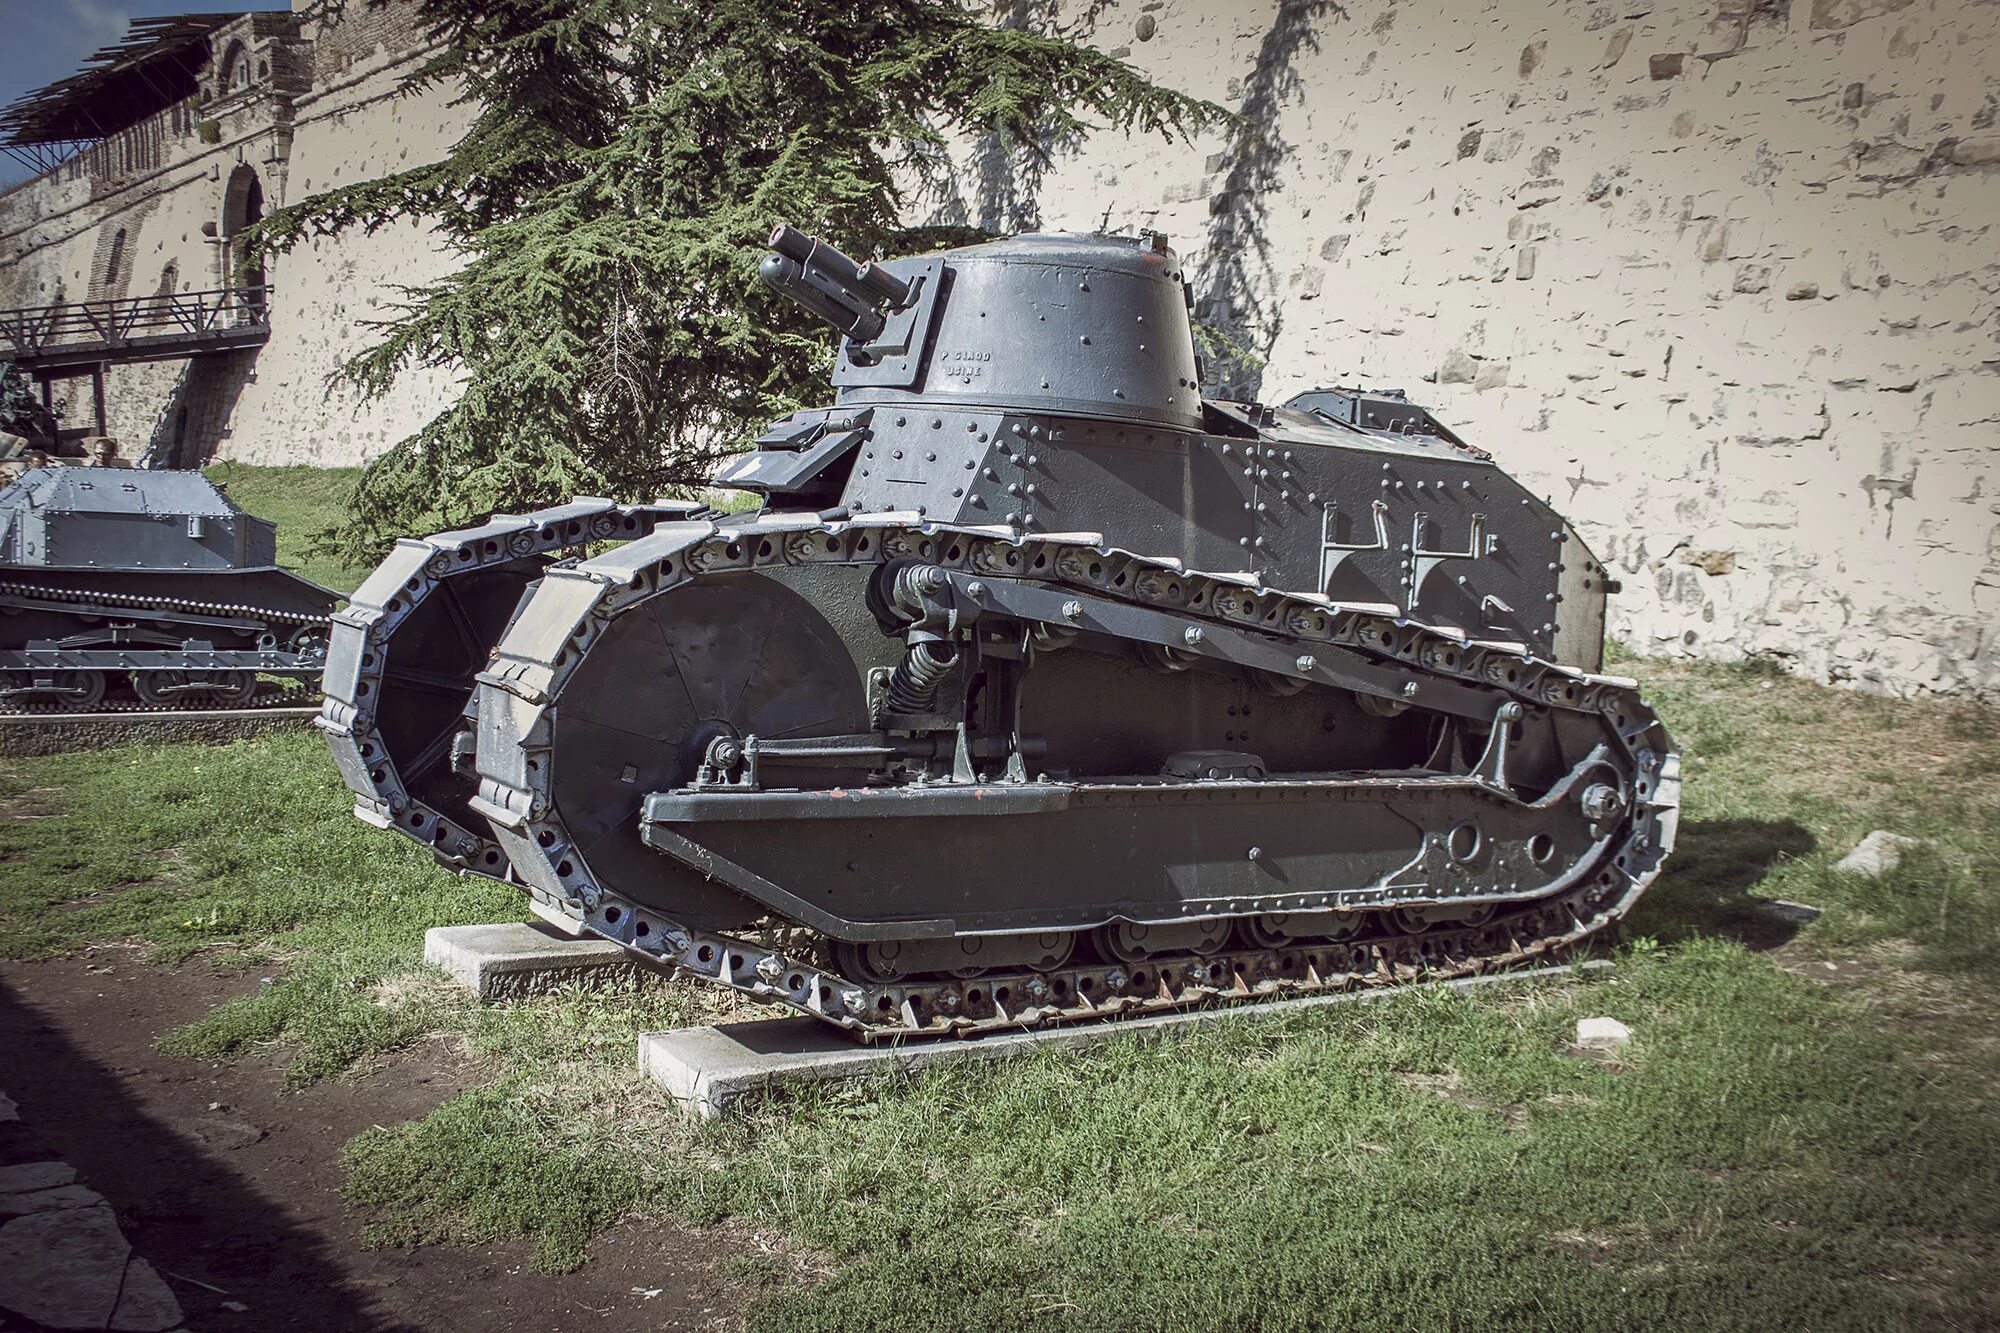 Когда появились первые танки